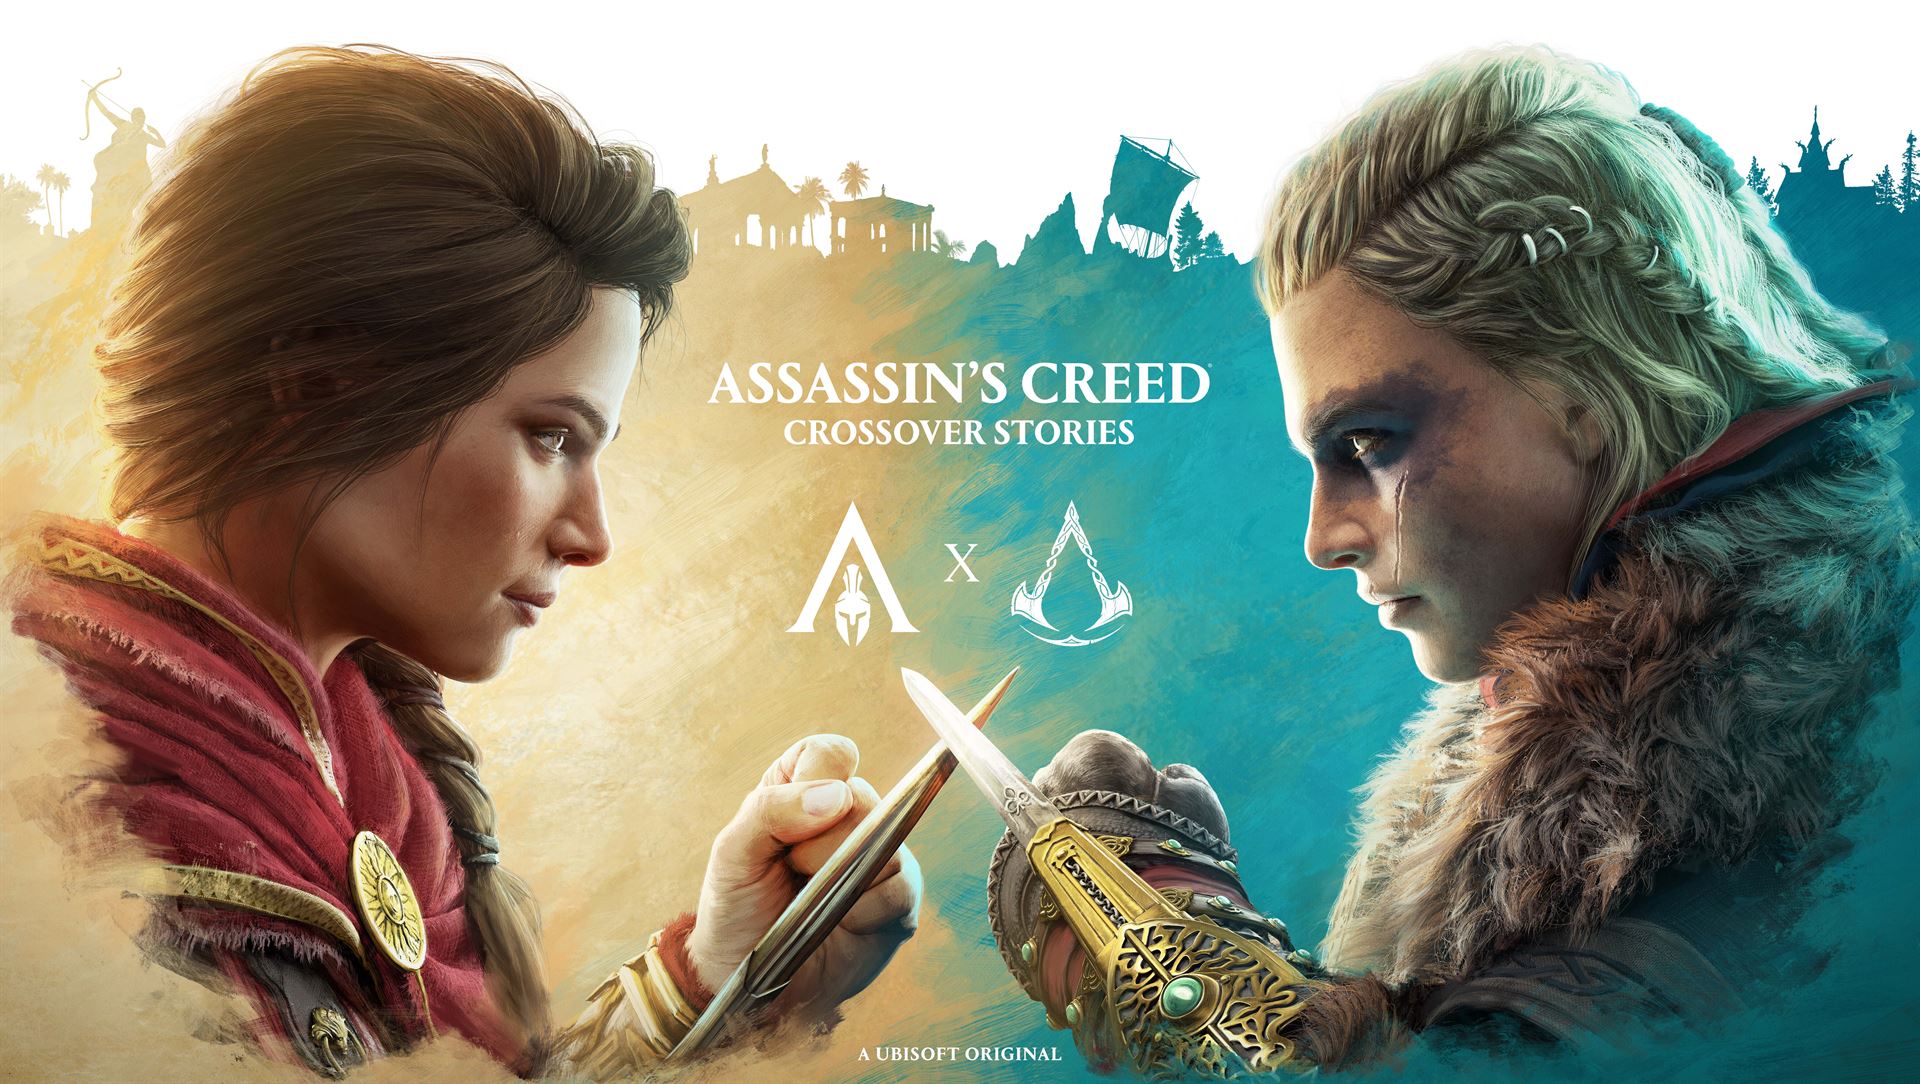 ถึงเวลาของ 2 ตัวเอกอย่าง Eivor และ Kassandra ได้มาพบกันในอัปเดตใหม่ Assassin's Creed Crossover Stories 